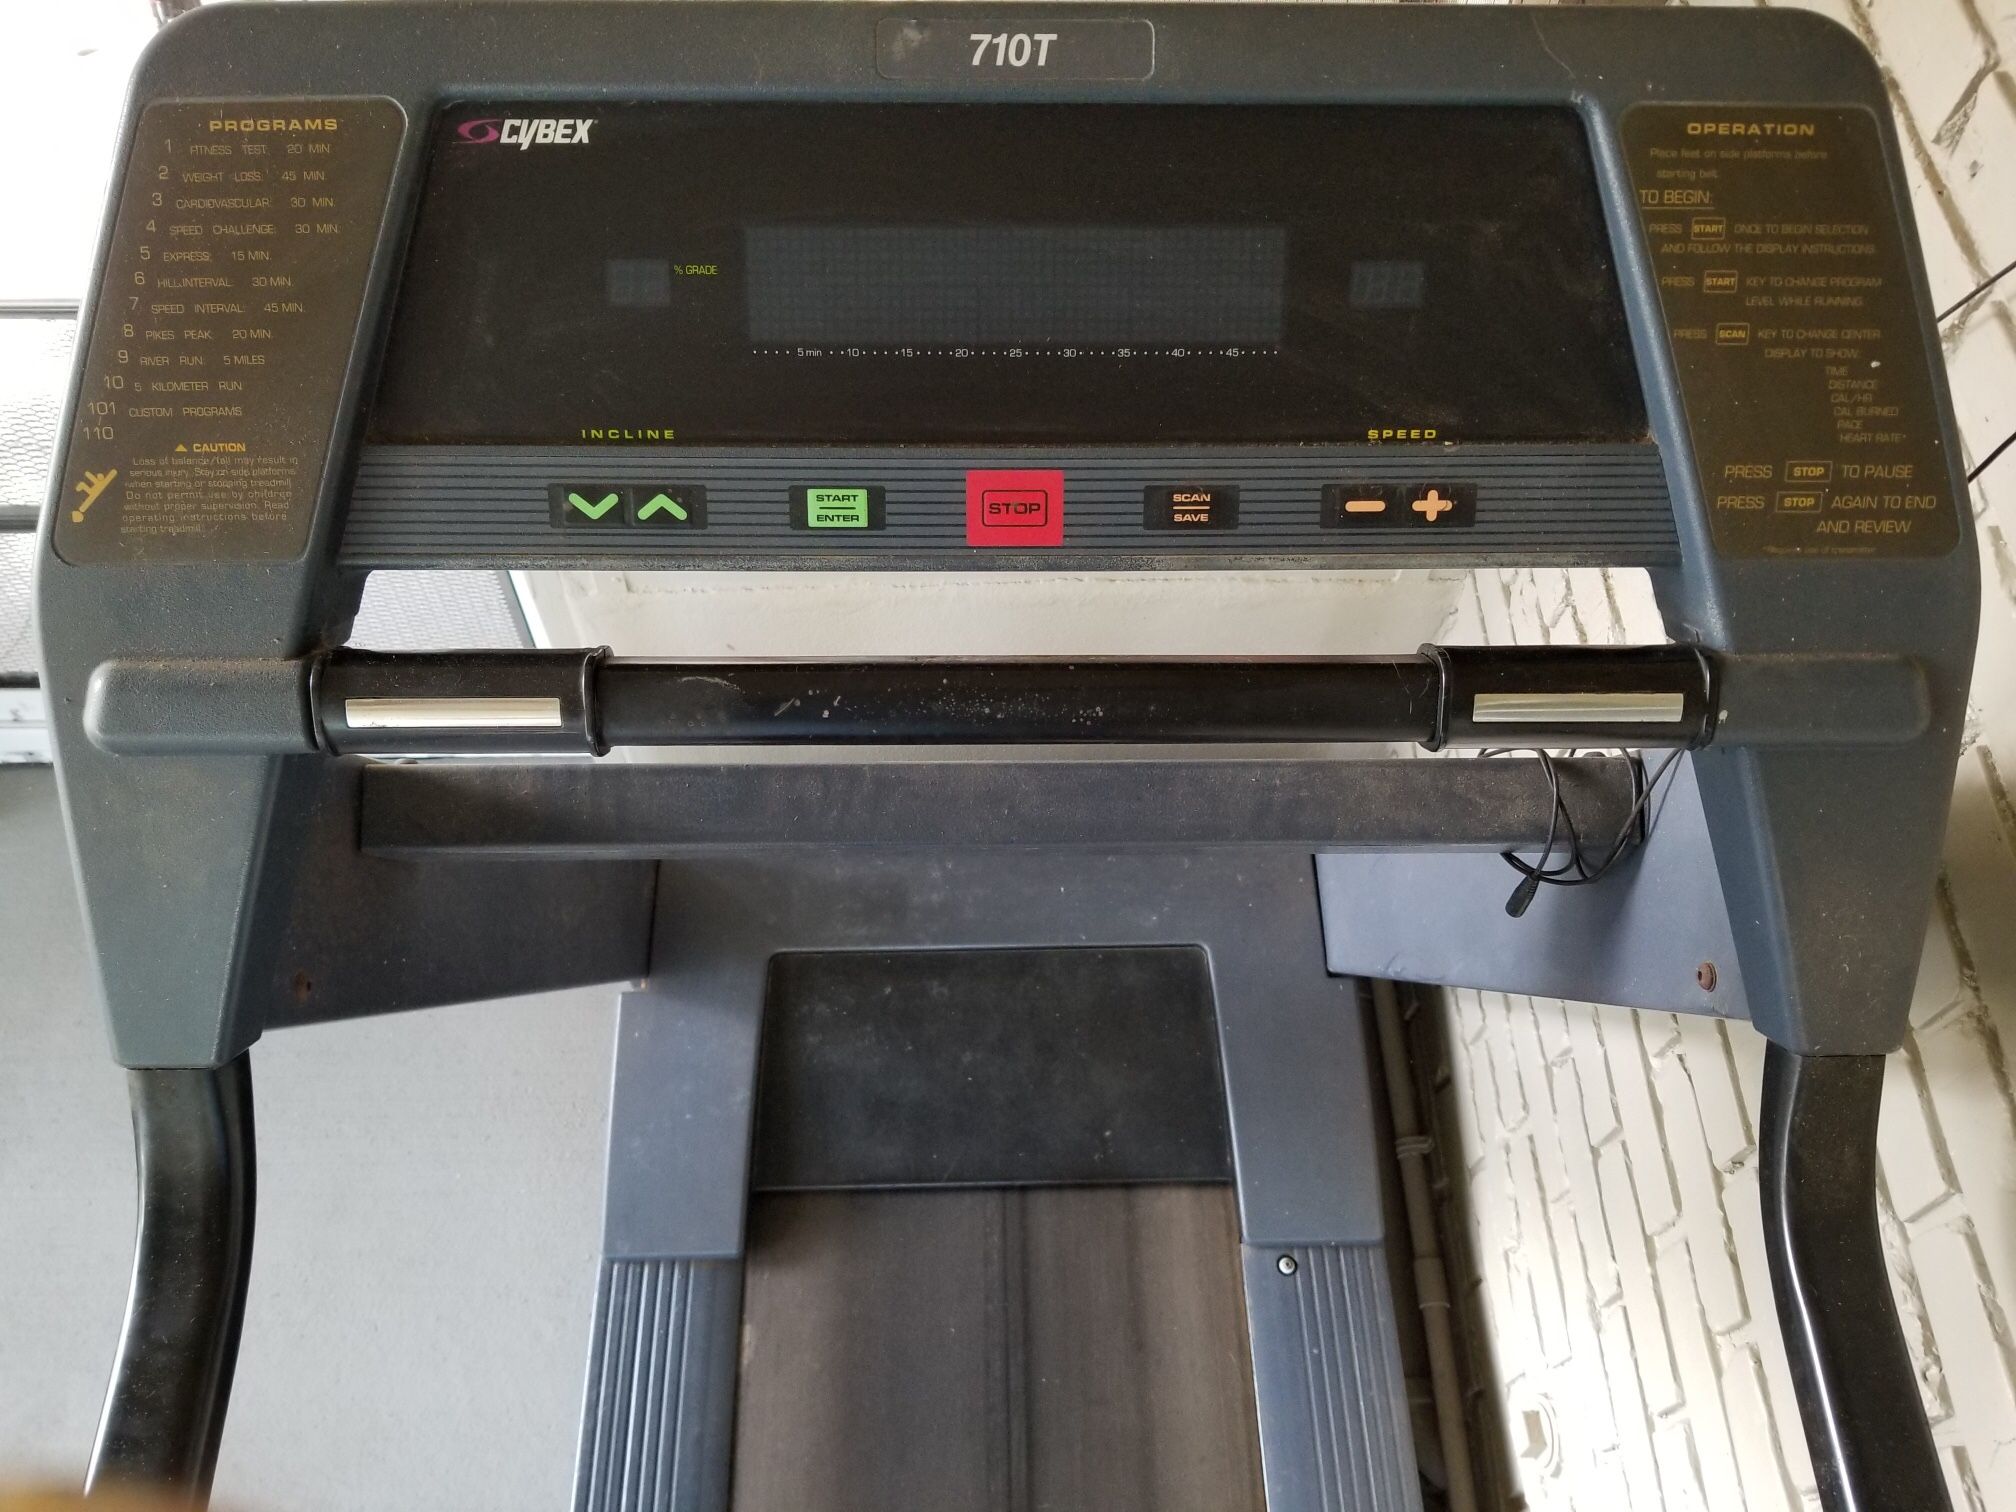 * FREE Cybex 710T Treadmill 